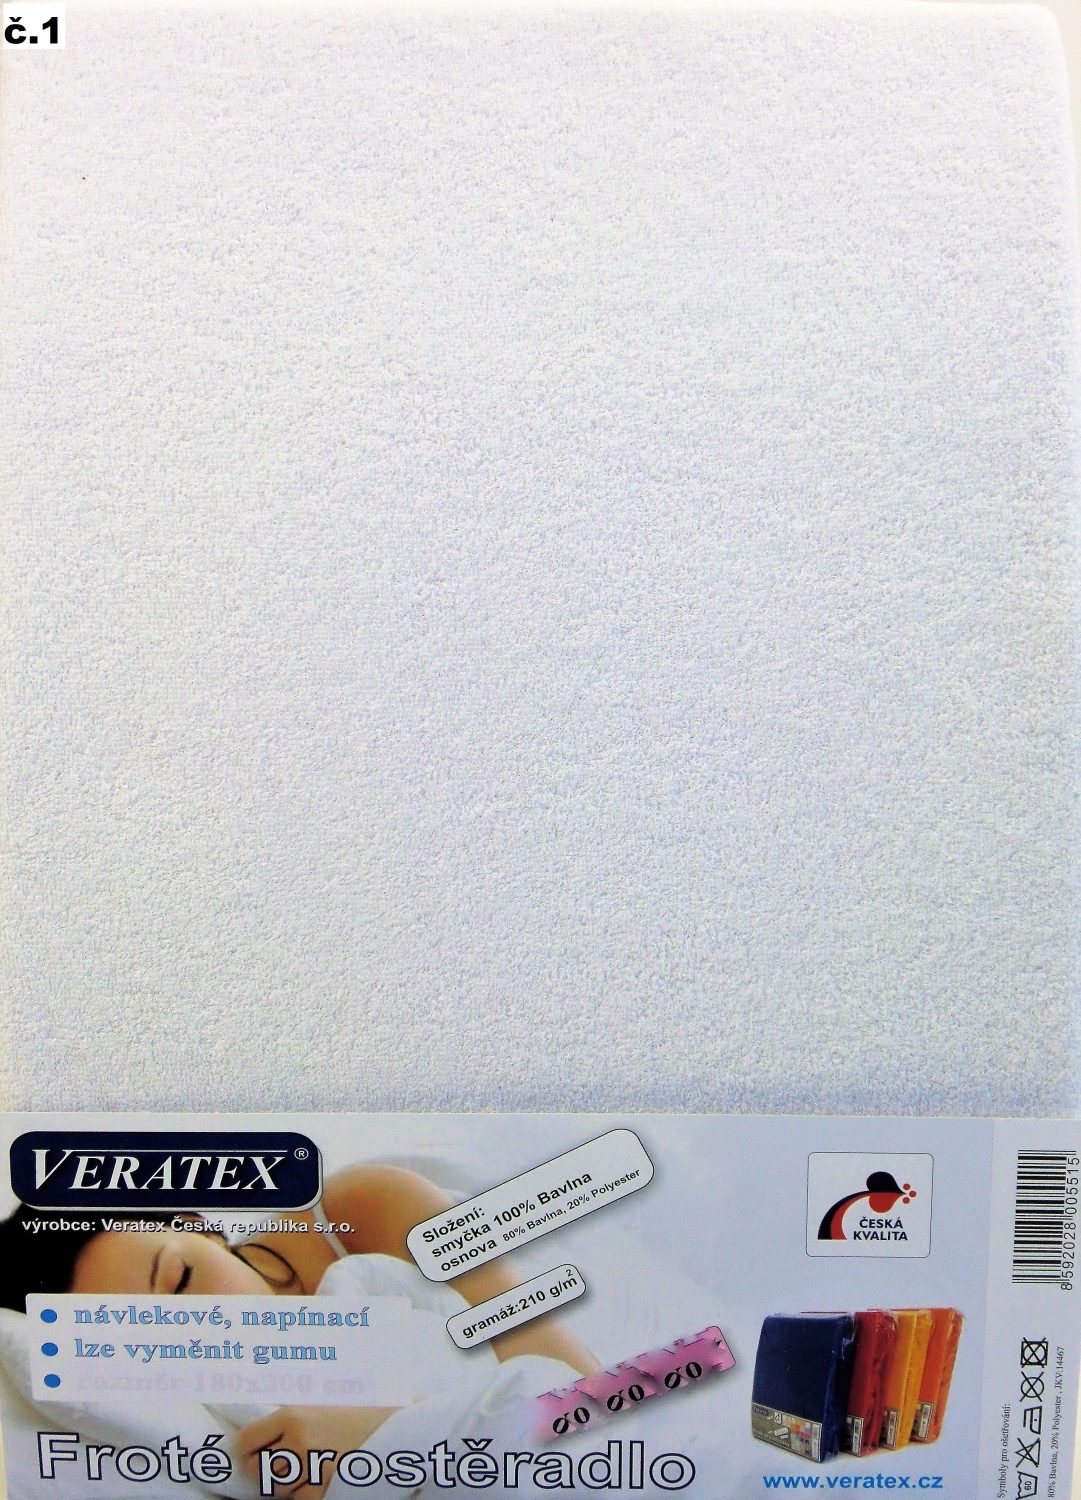 Veratex Froté prostěradlo jednolůžko 90x200/25cm (č. 1-bílé)